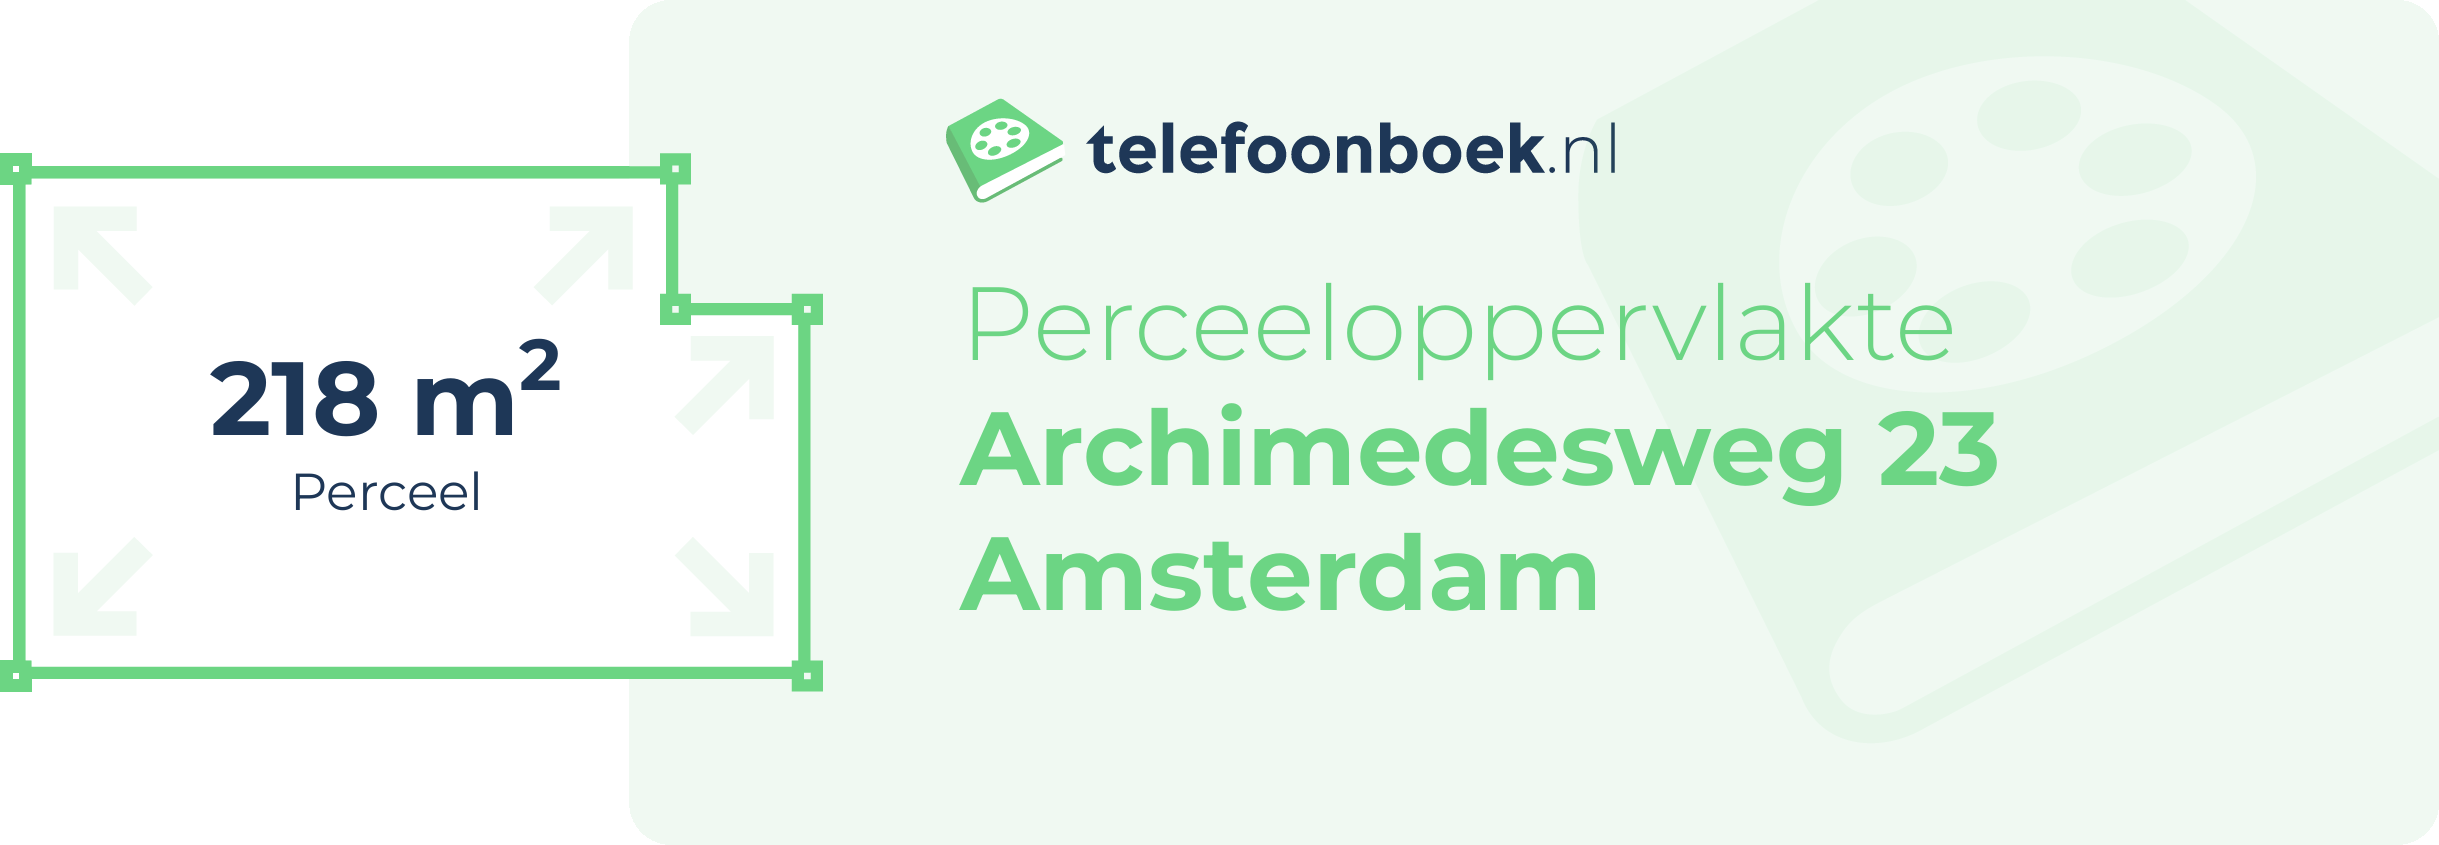 Perceeloppervlakte Archimedesweg 23 Amsterdam